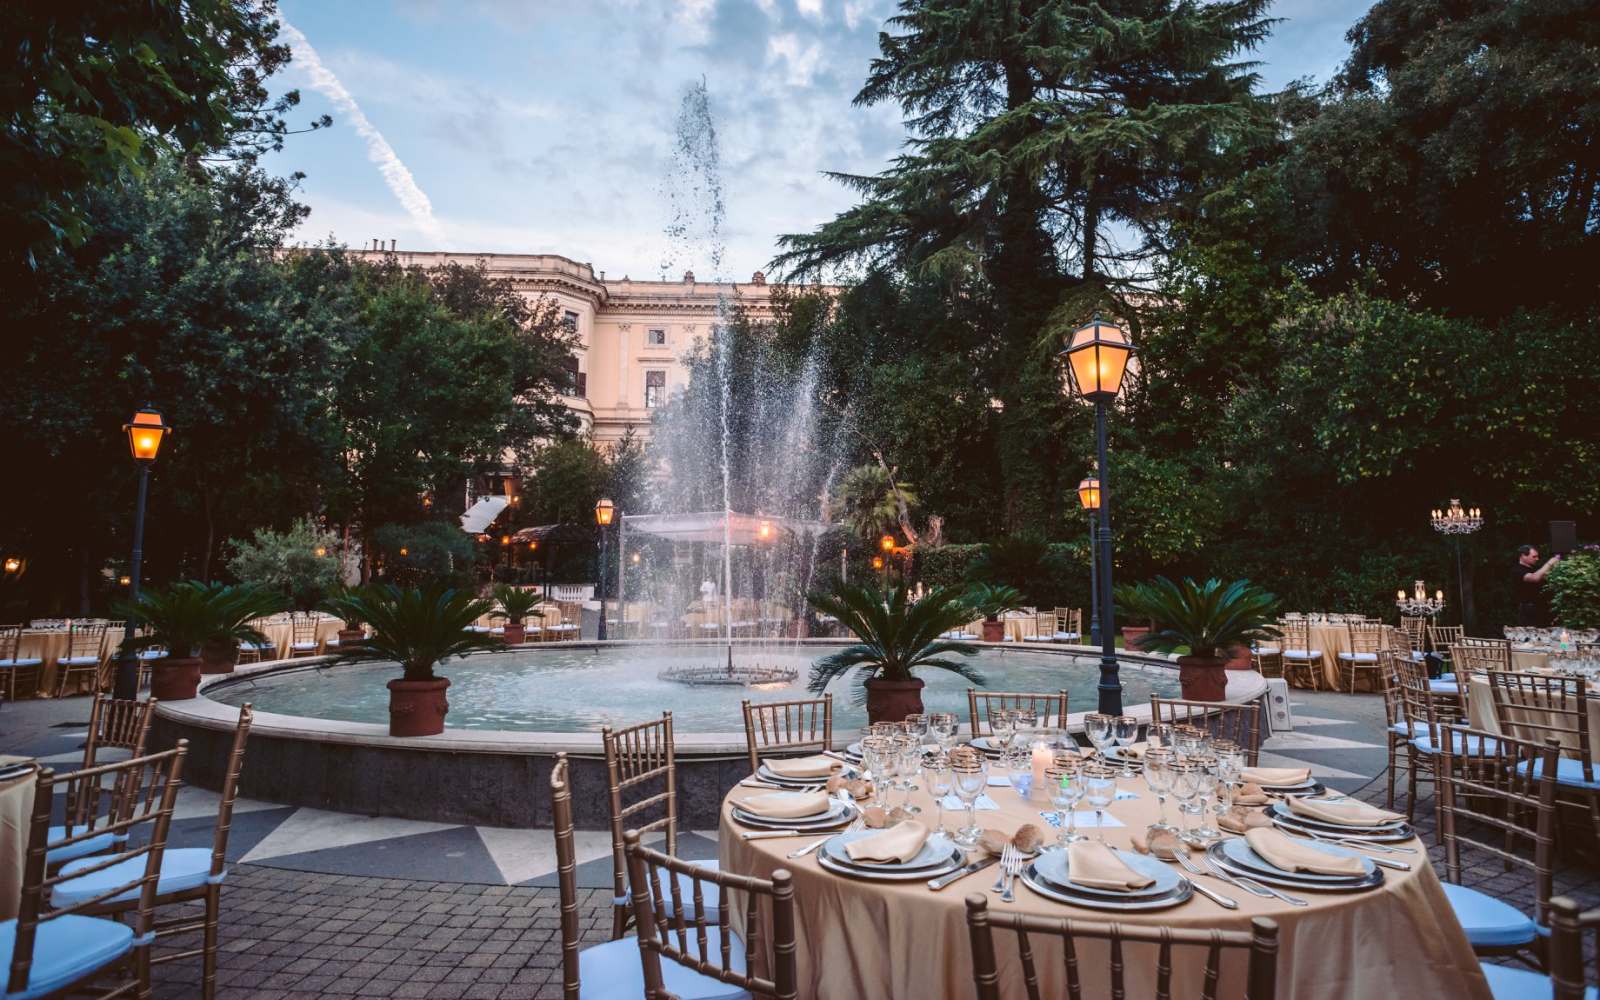 esterno palazzo brancaccio a roma con tavoli rotorndi allestiti per cerimonia, sullo sfondo una fontana accesa